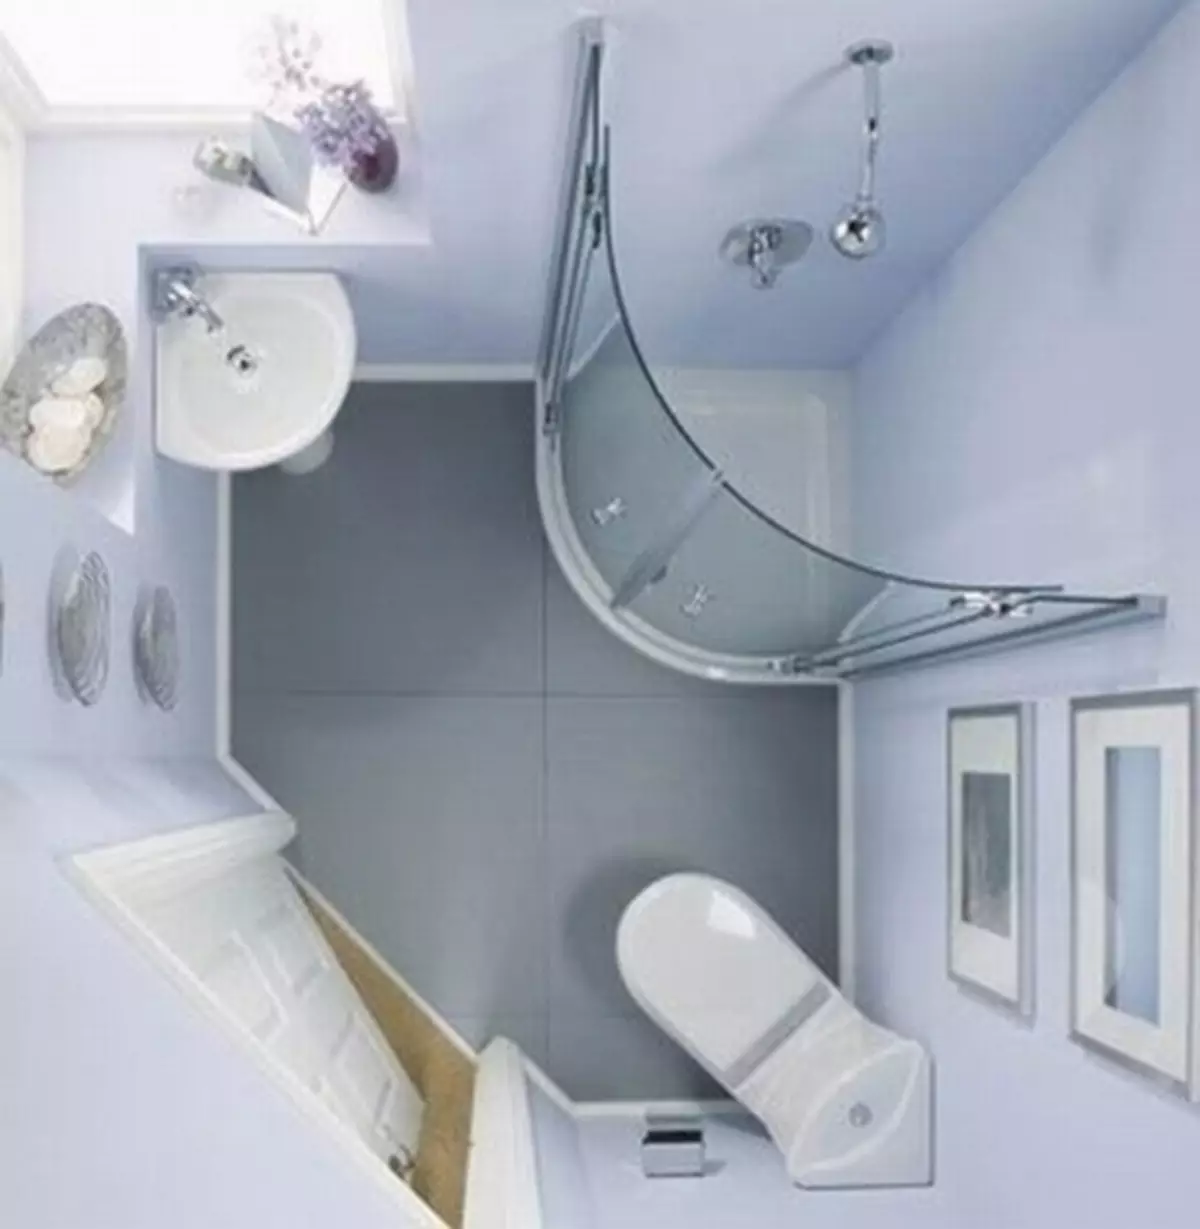 浴室布局 - 选项和解决方案